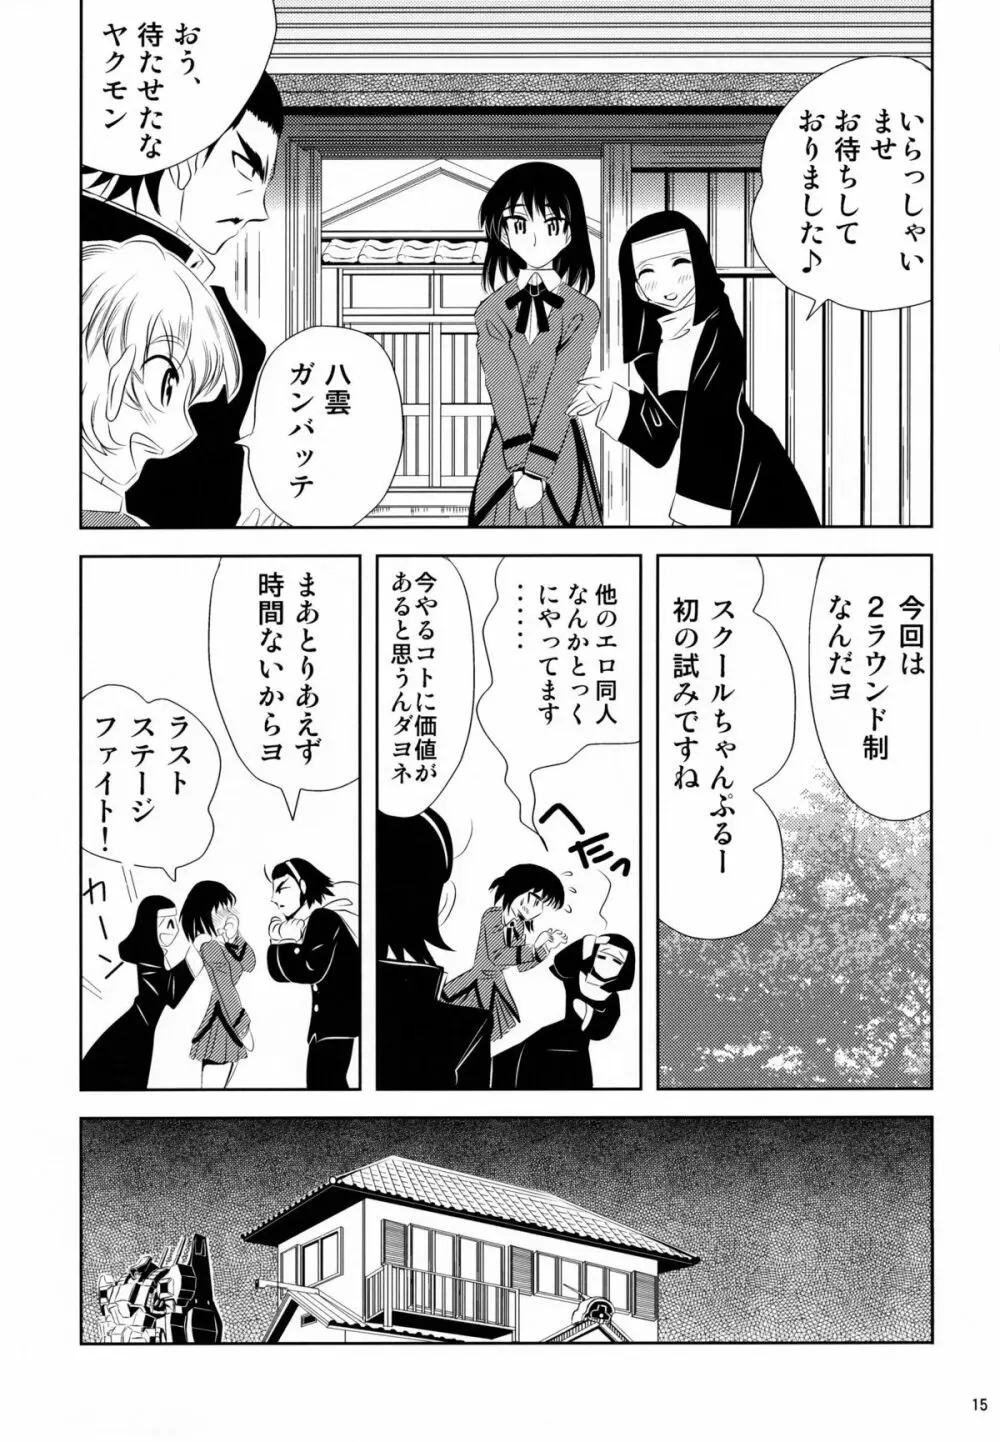 school ちゃんぷるー 13 15ページ